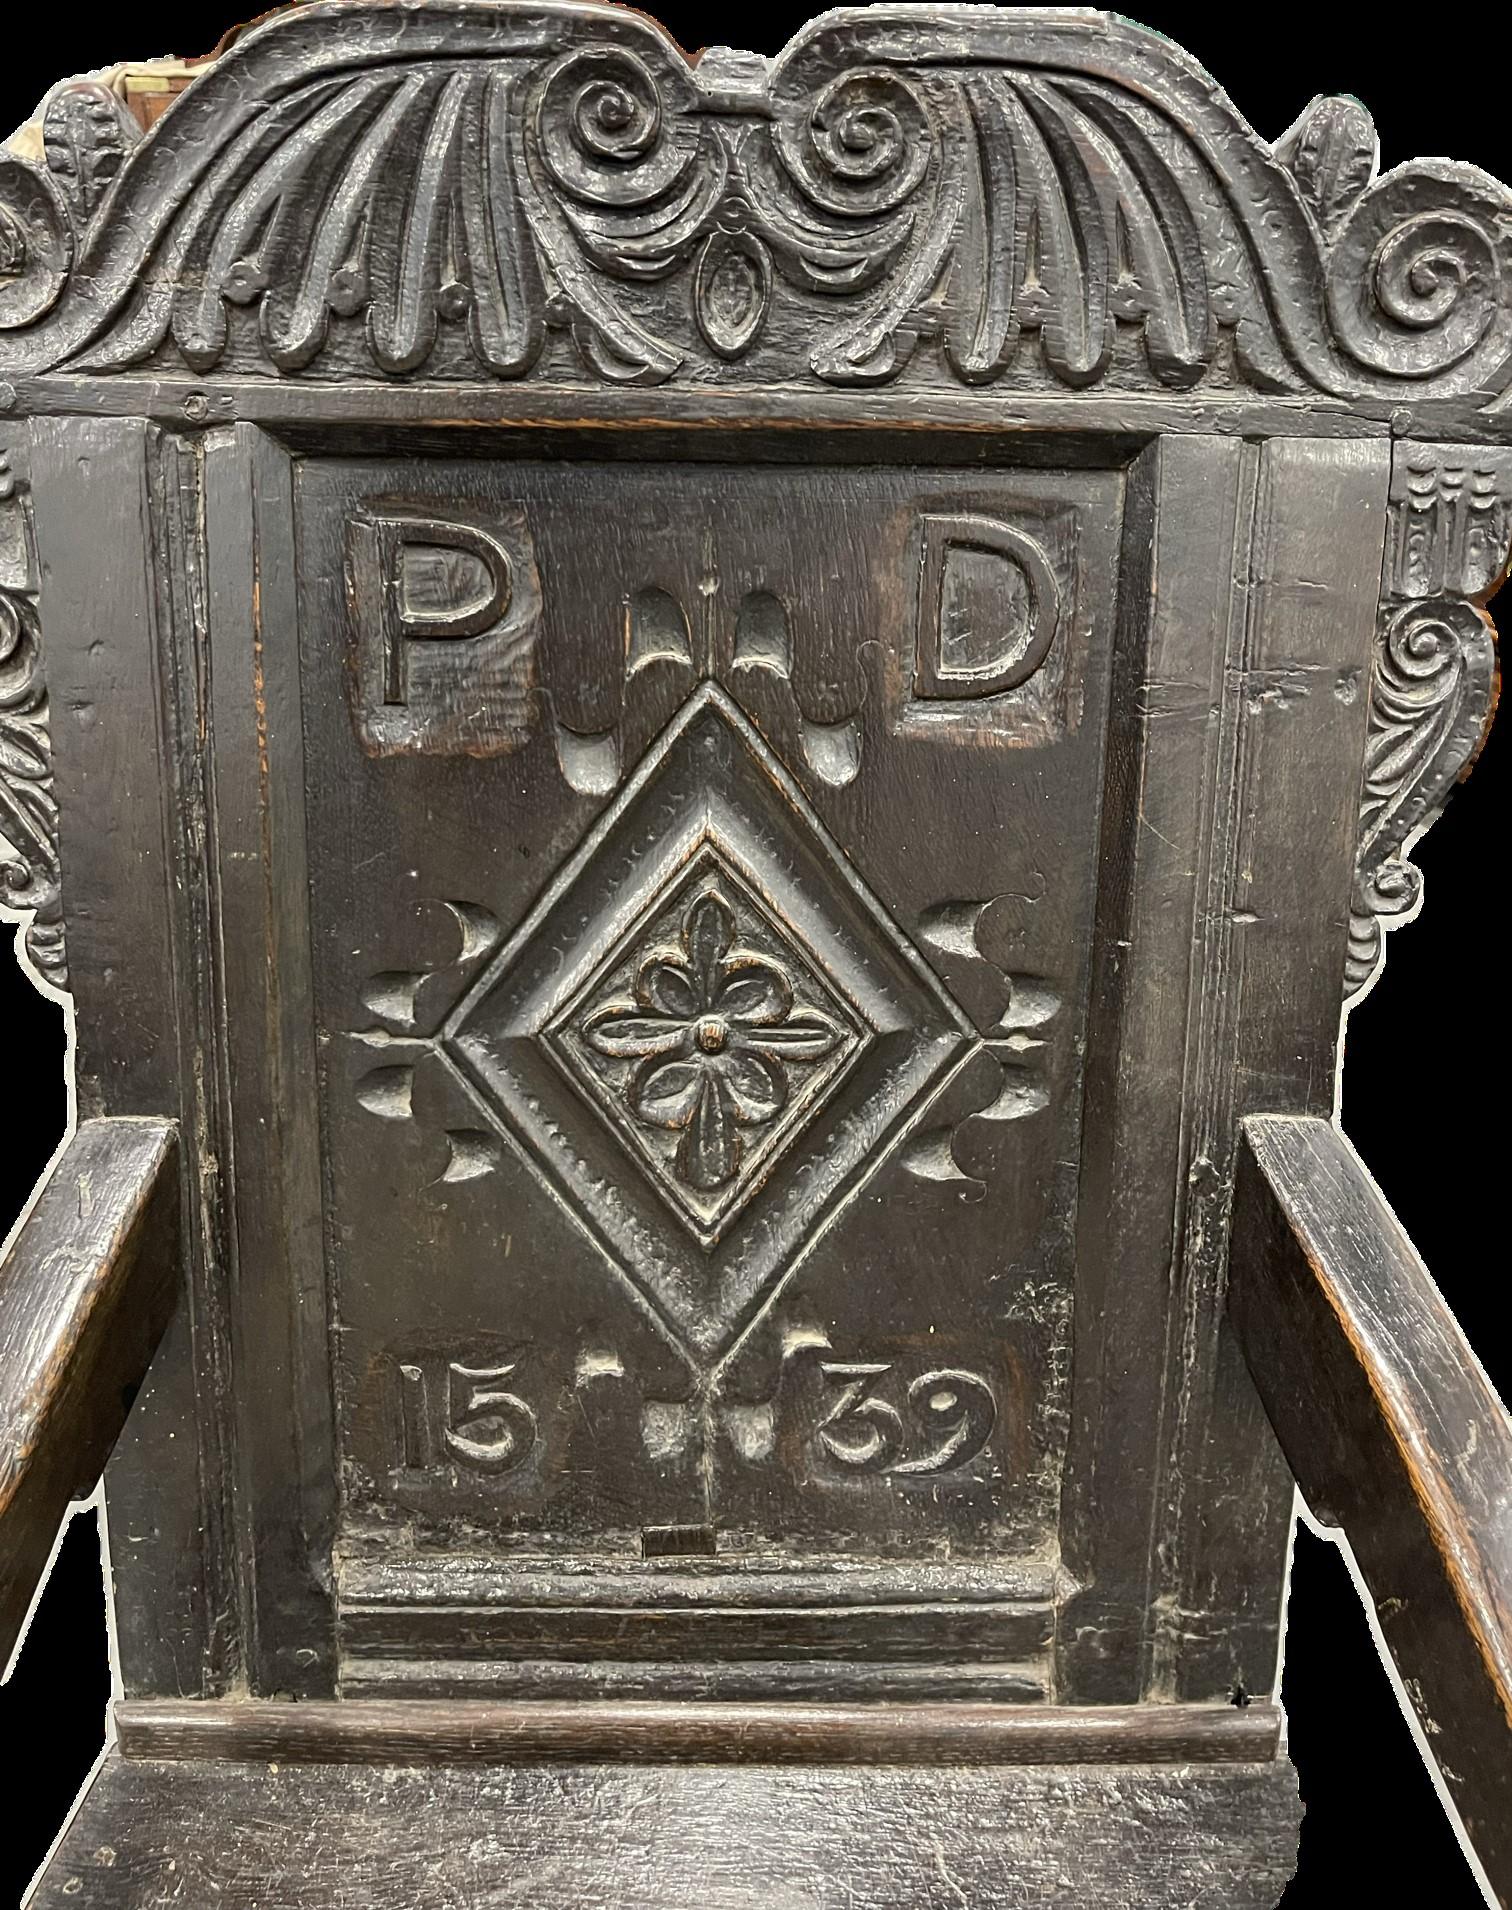 Un exemple absolument magnifique d'une chaise Wainscot en chêne,  la traverse supérieure sculptée de rinceaux et de feuillages au-dessus d'un dossier à panneaux, centré par un losange incisé, paraphé et daté 